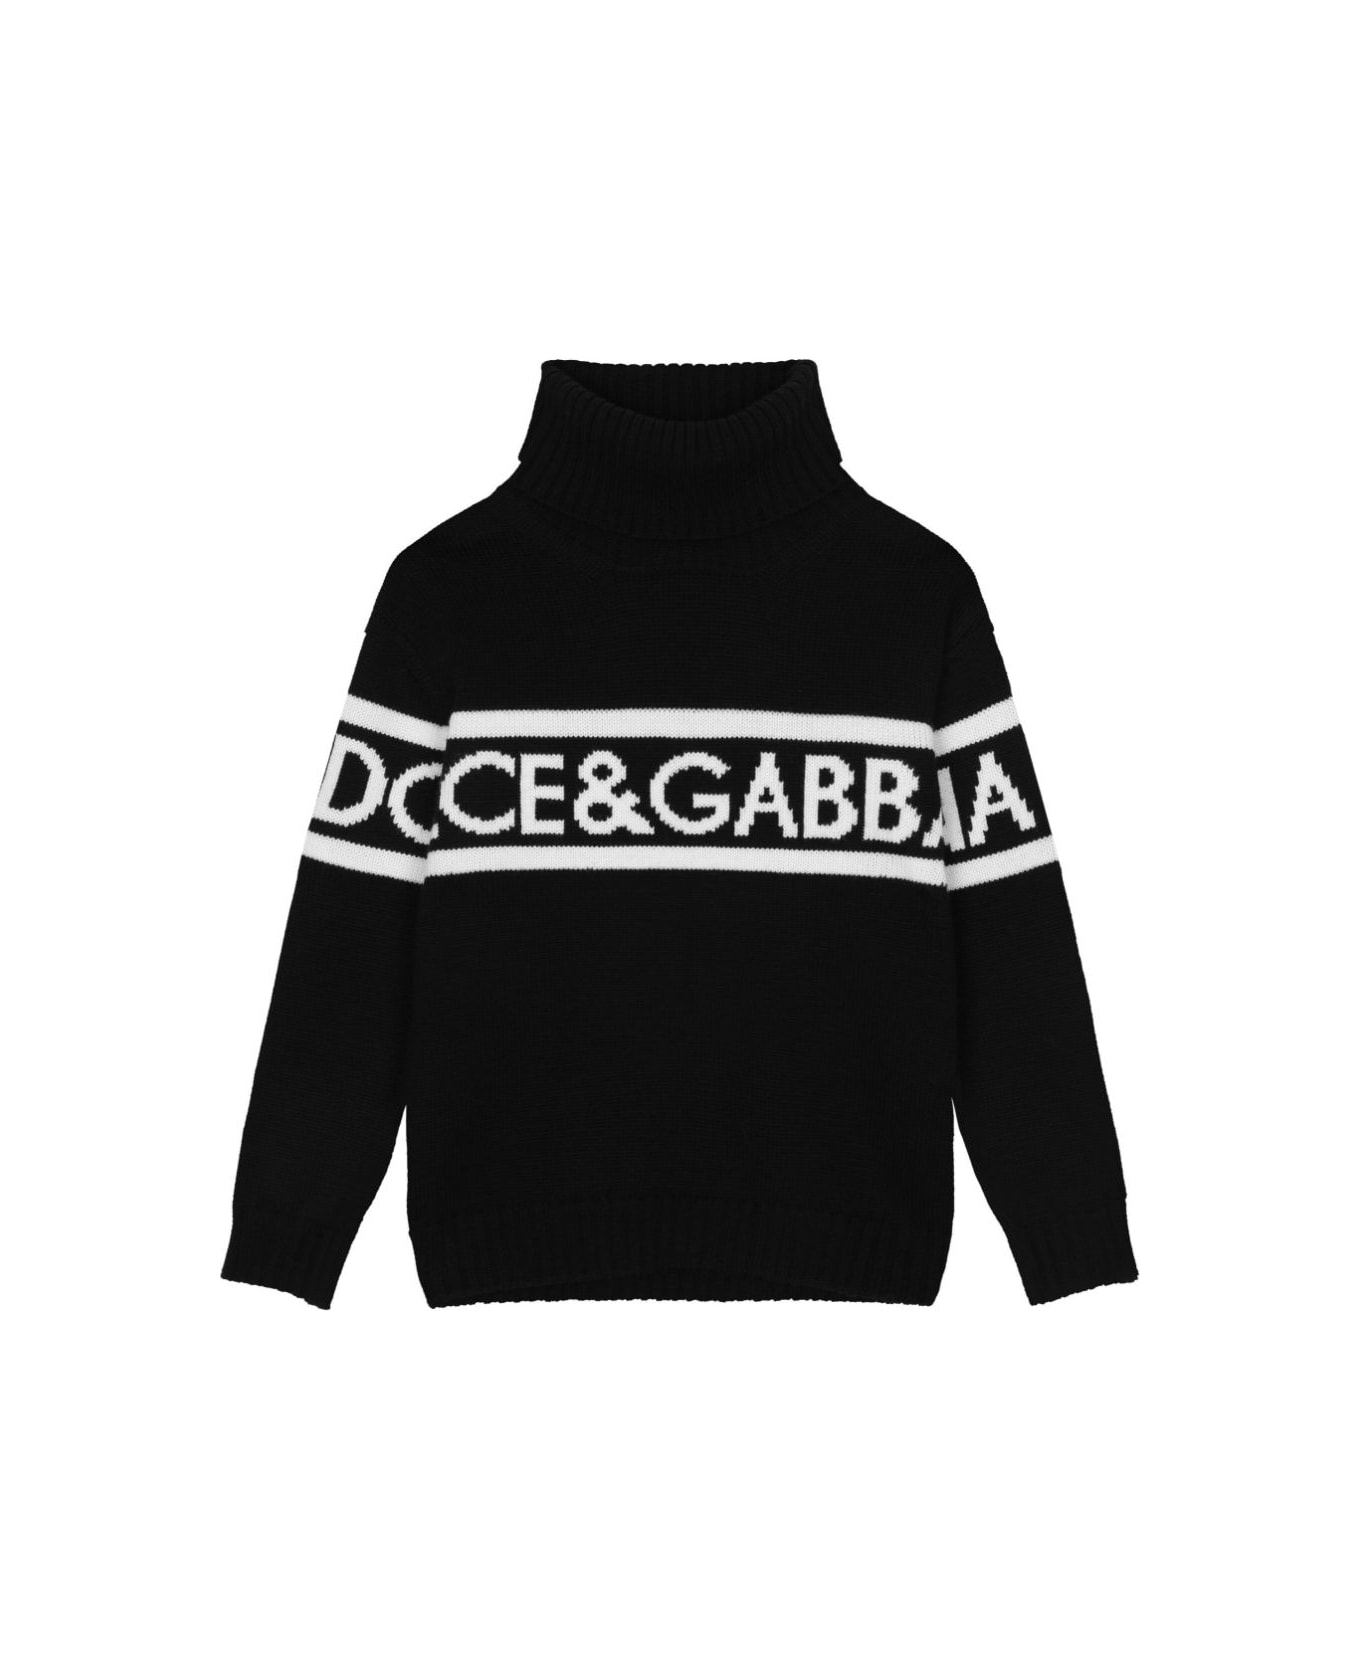 Dolce & Gabbana Pullover Nero Tema Dna In Maglia Di Lana Vergine Bambino - Nero